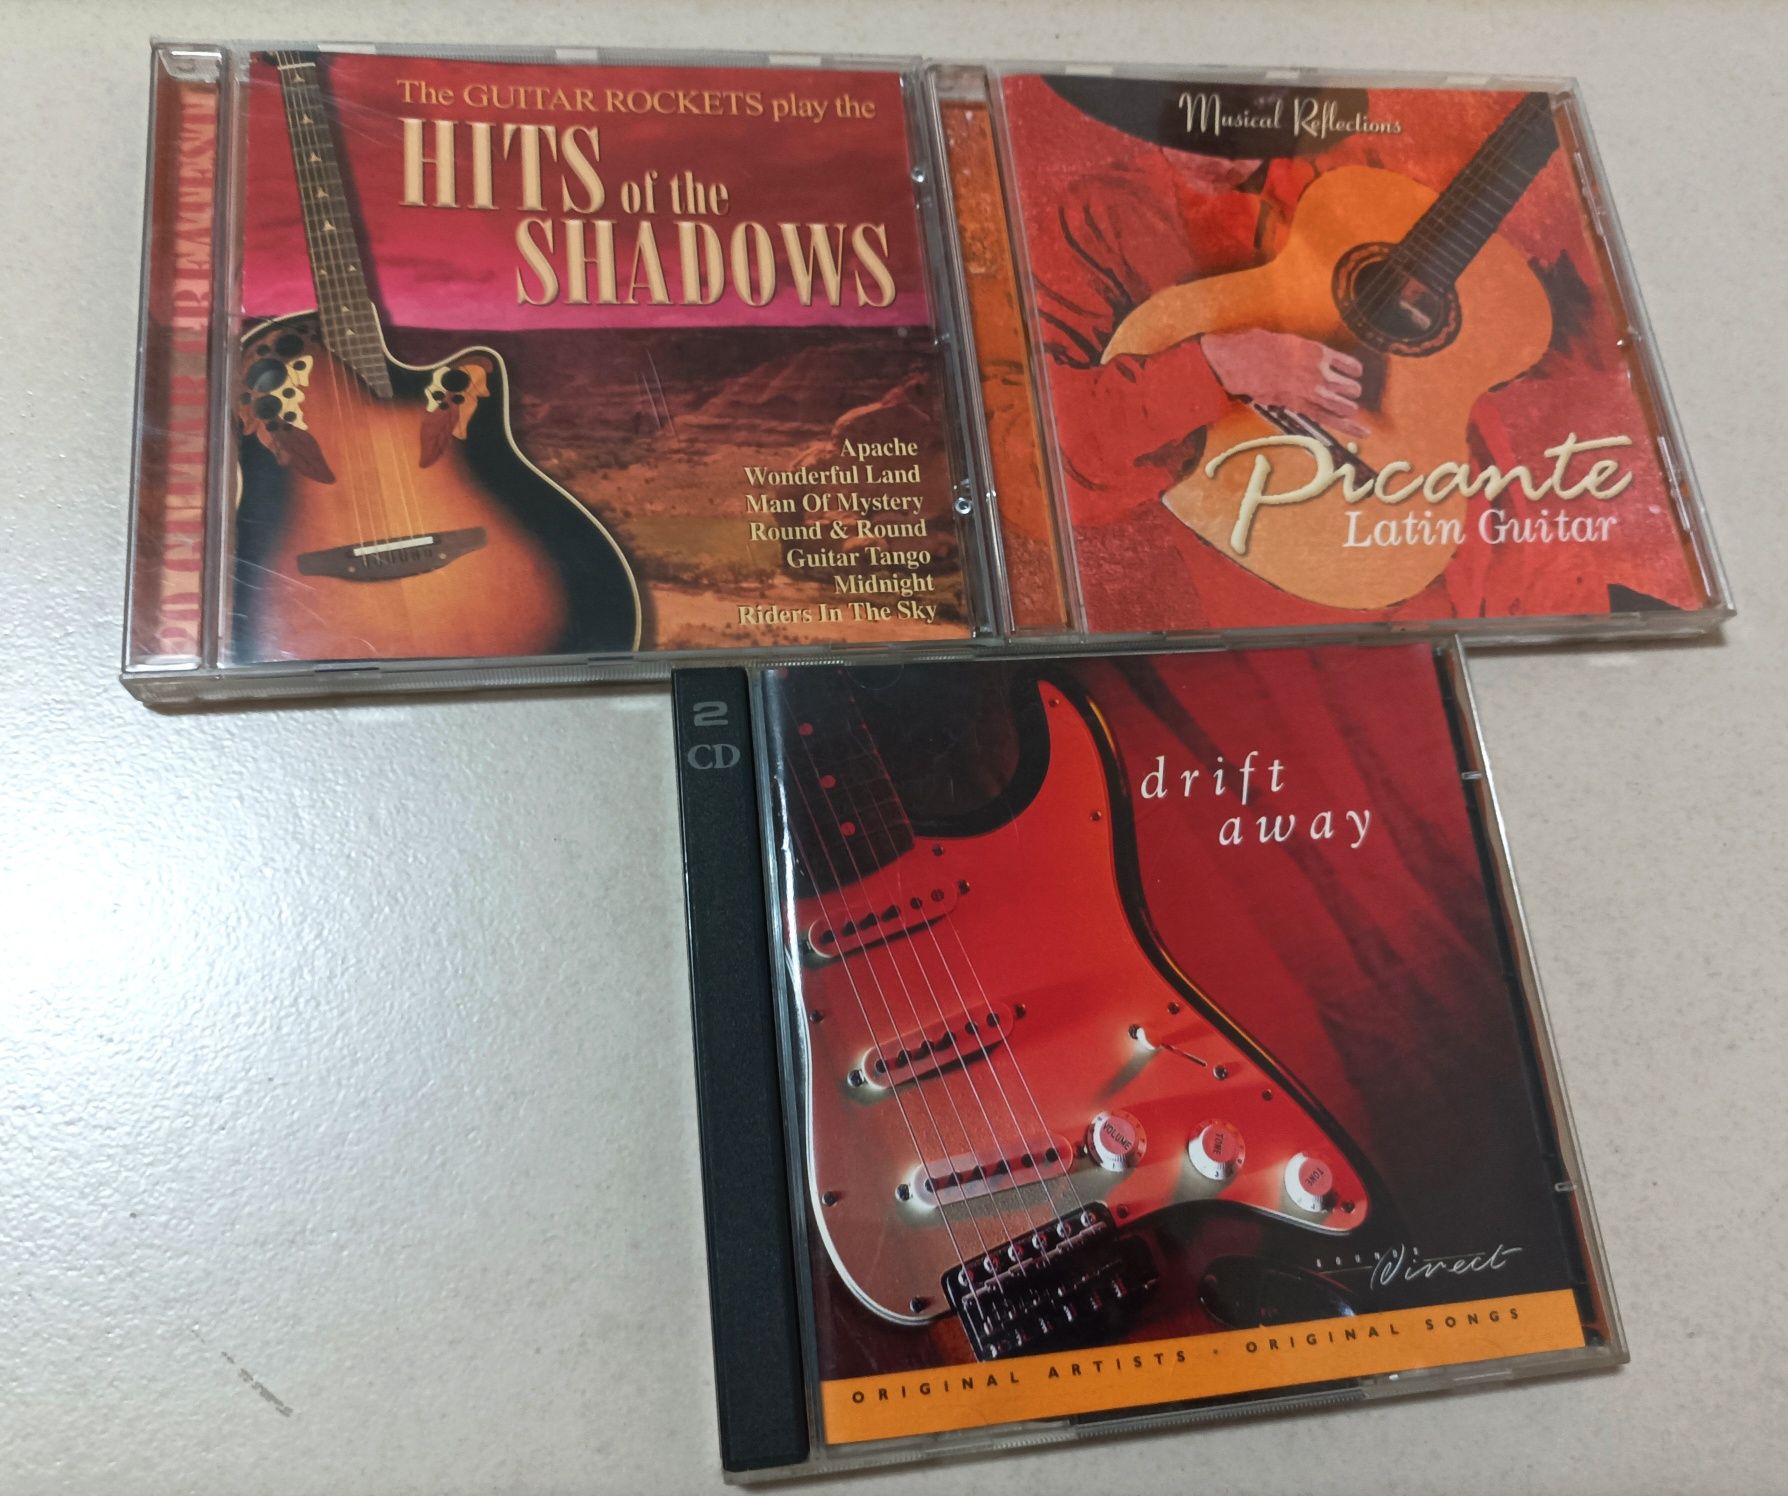 Lote de 9 CDs (Música Latina / Country / Bolero)